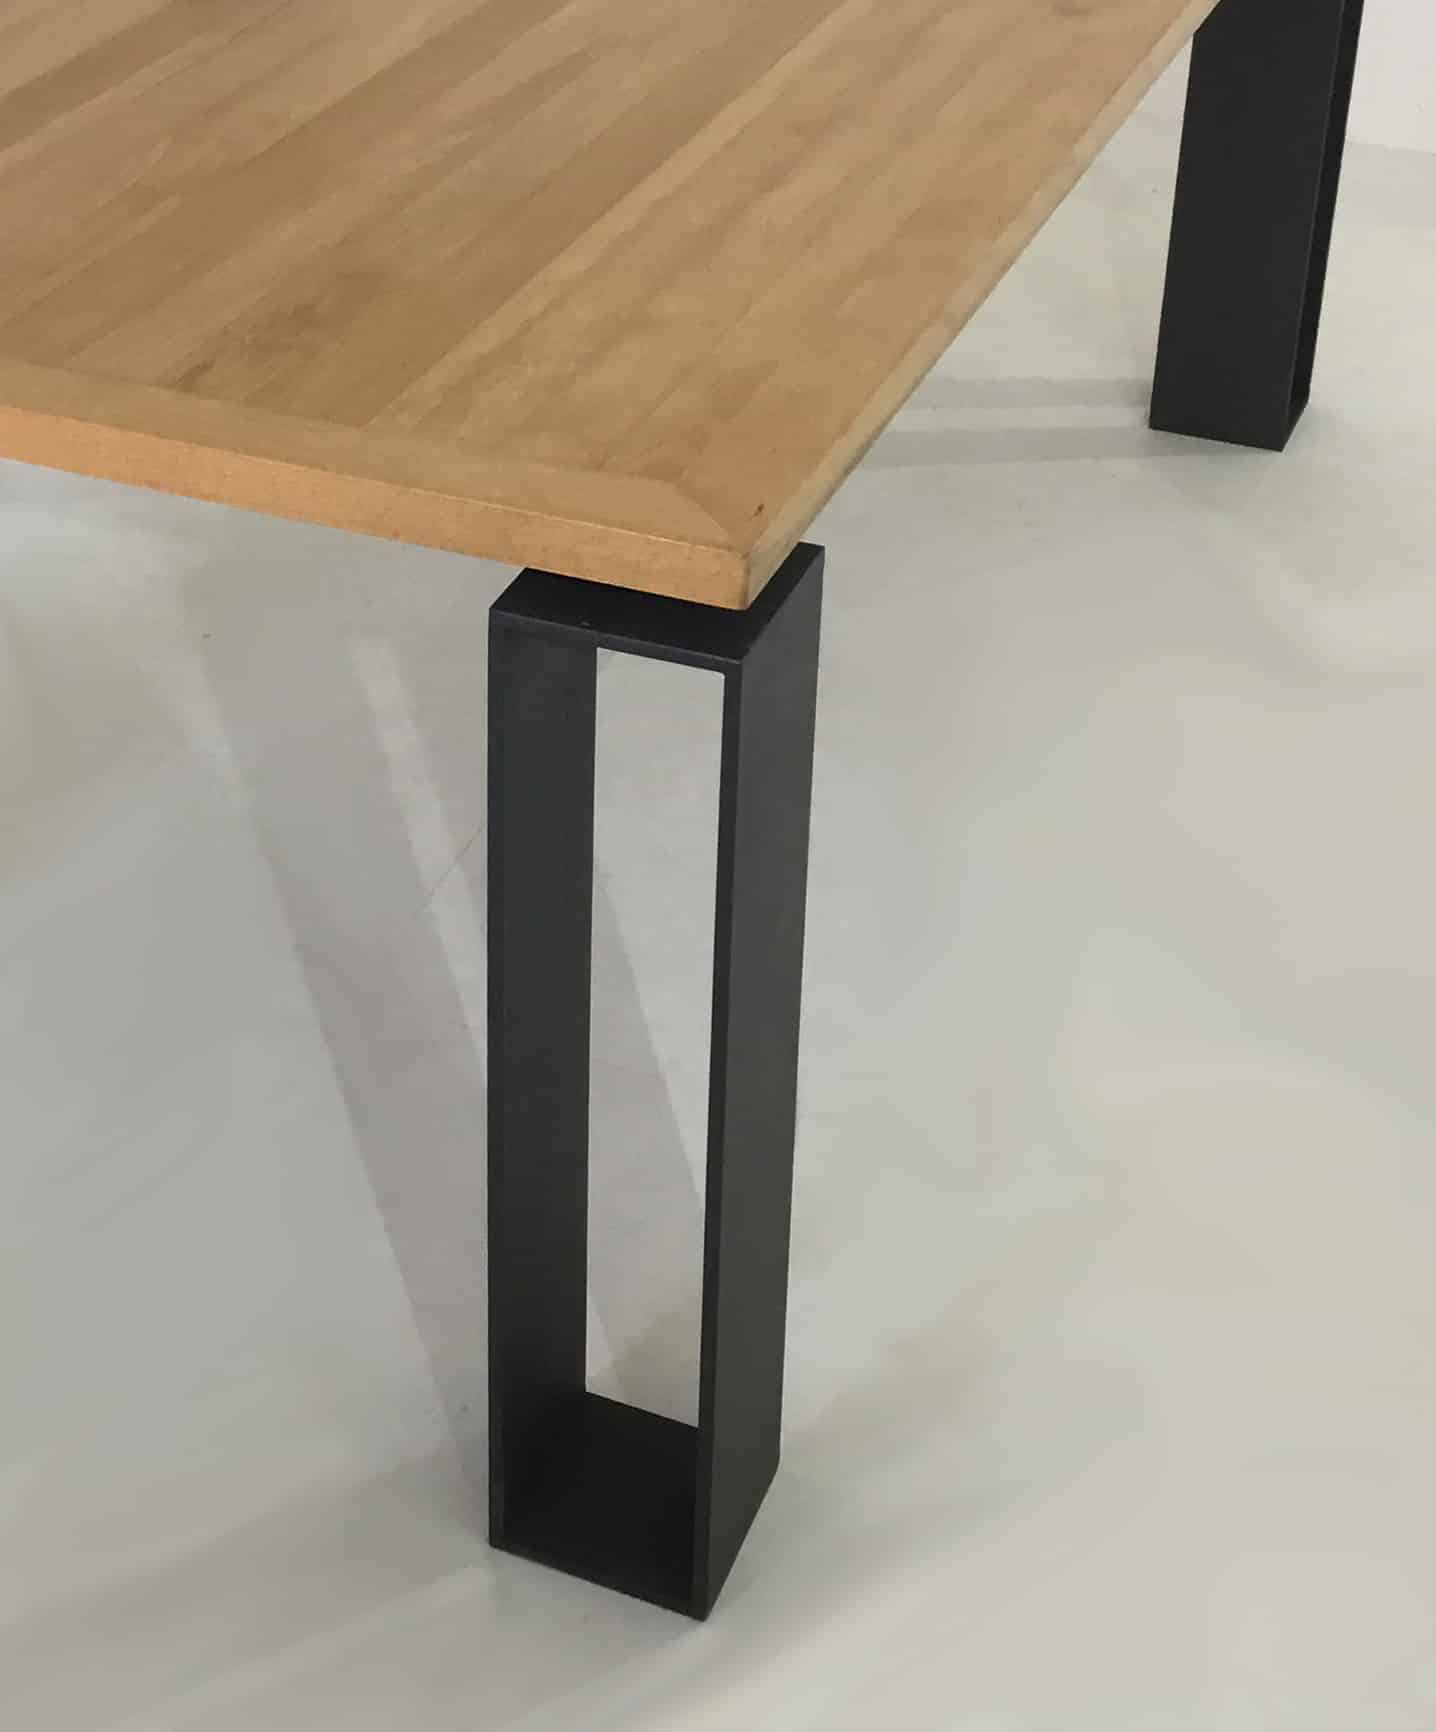 Table repas bois massif avec design de style minimaliste